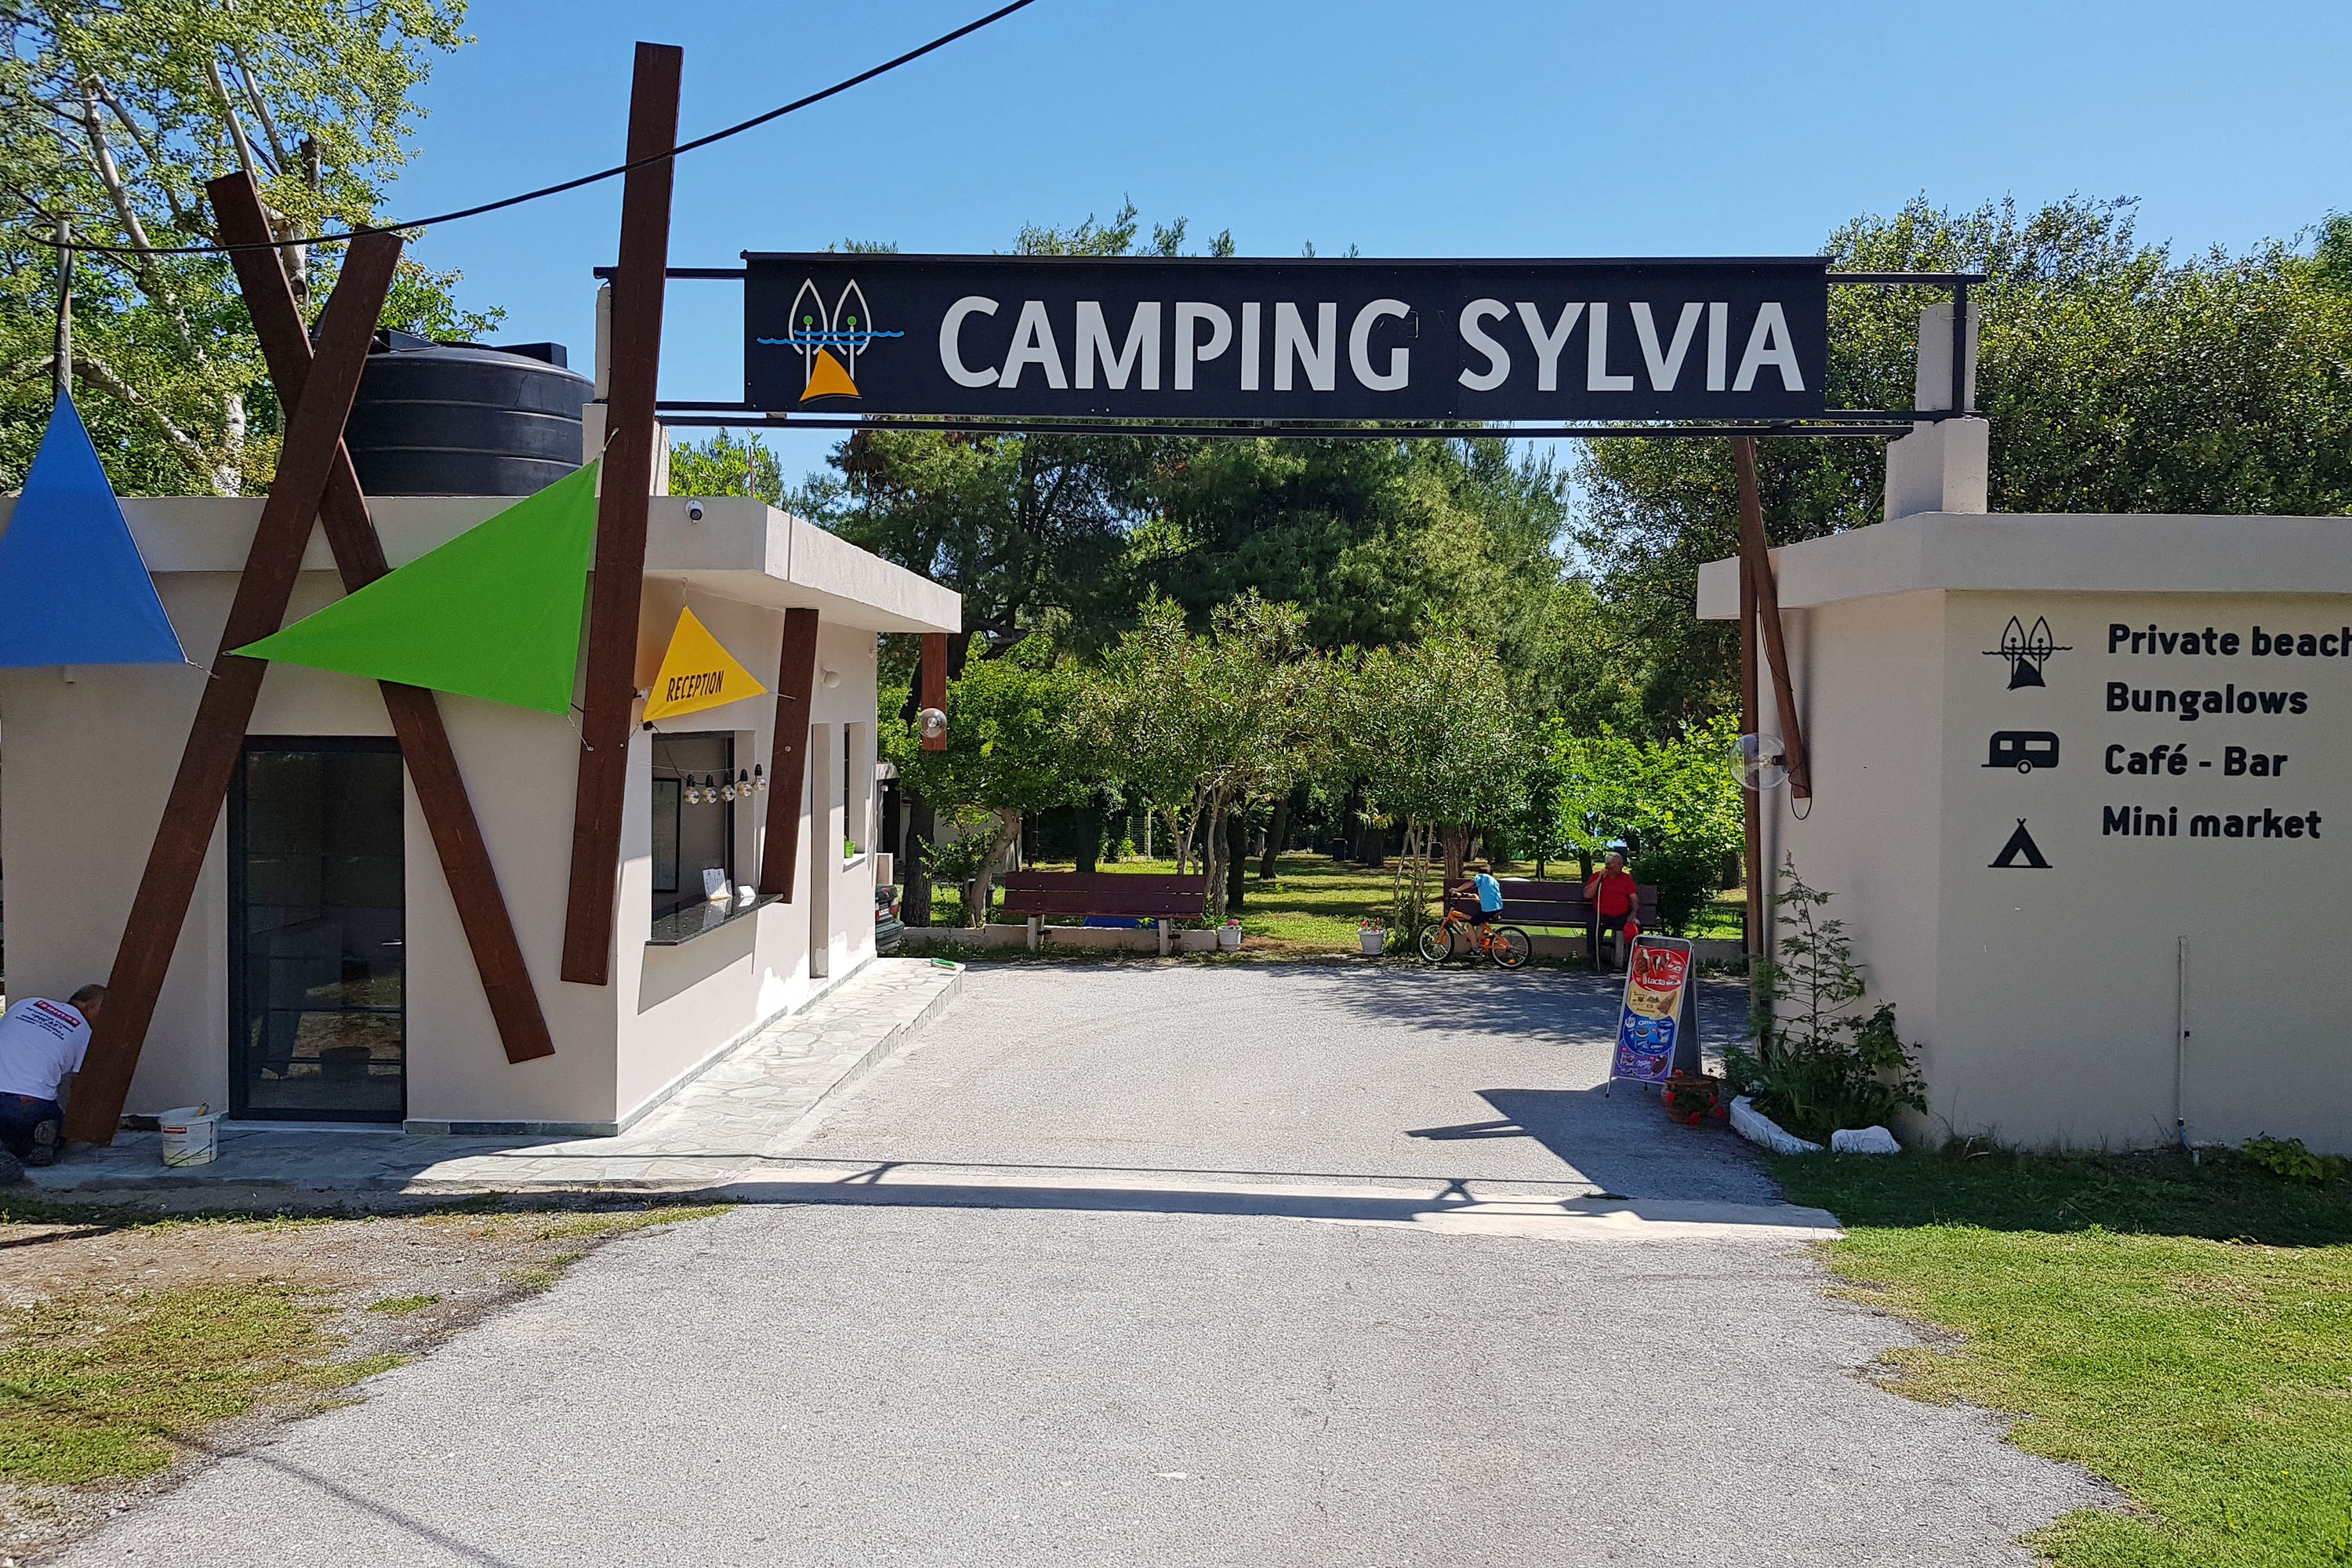 Camping Sylvia